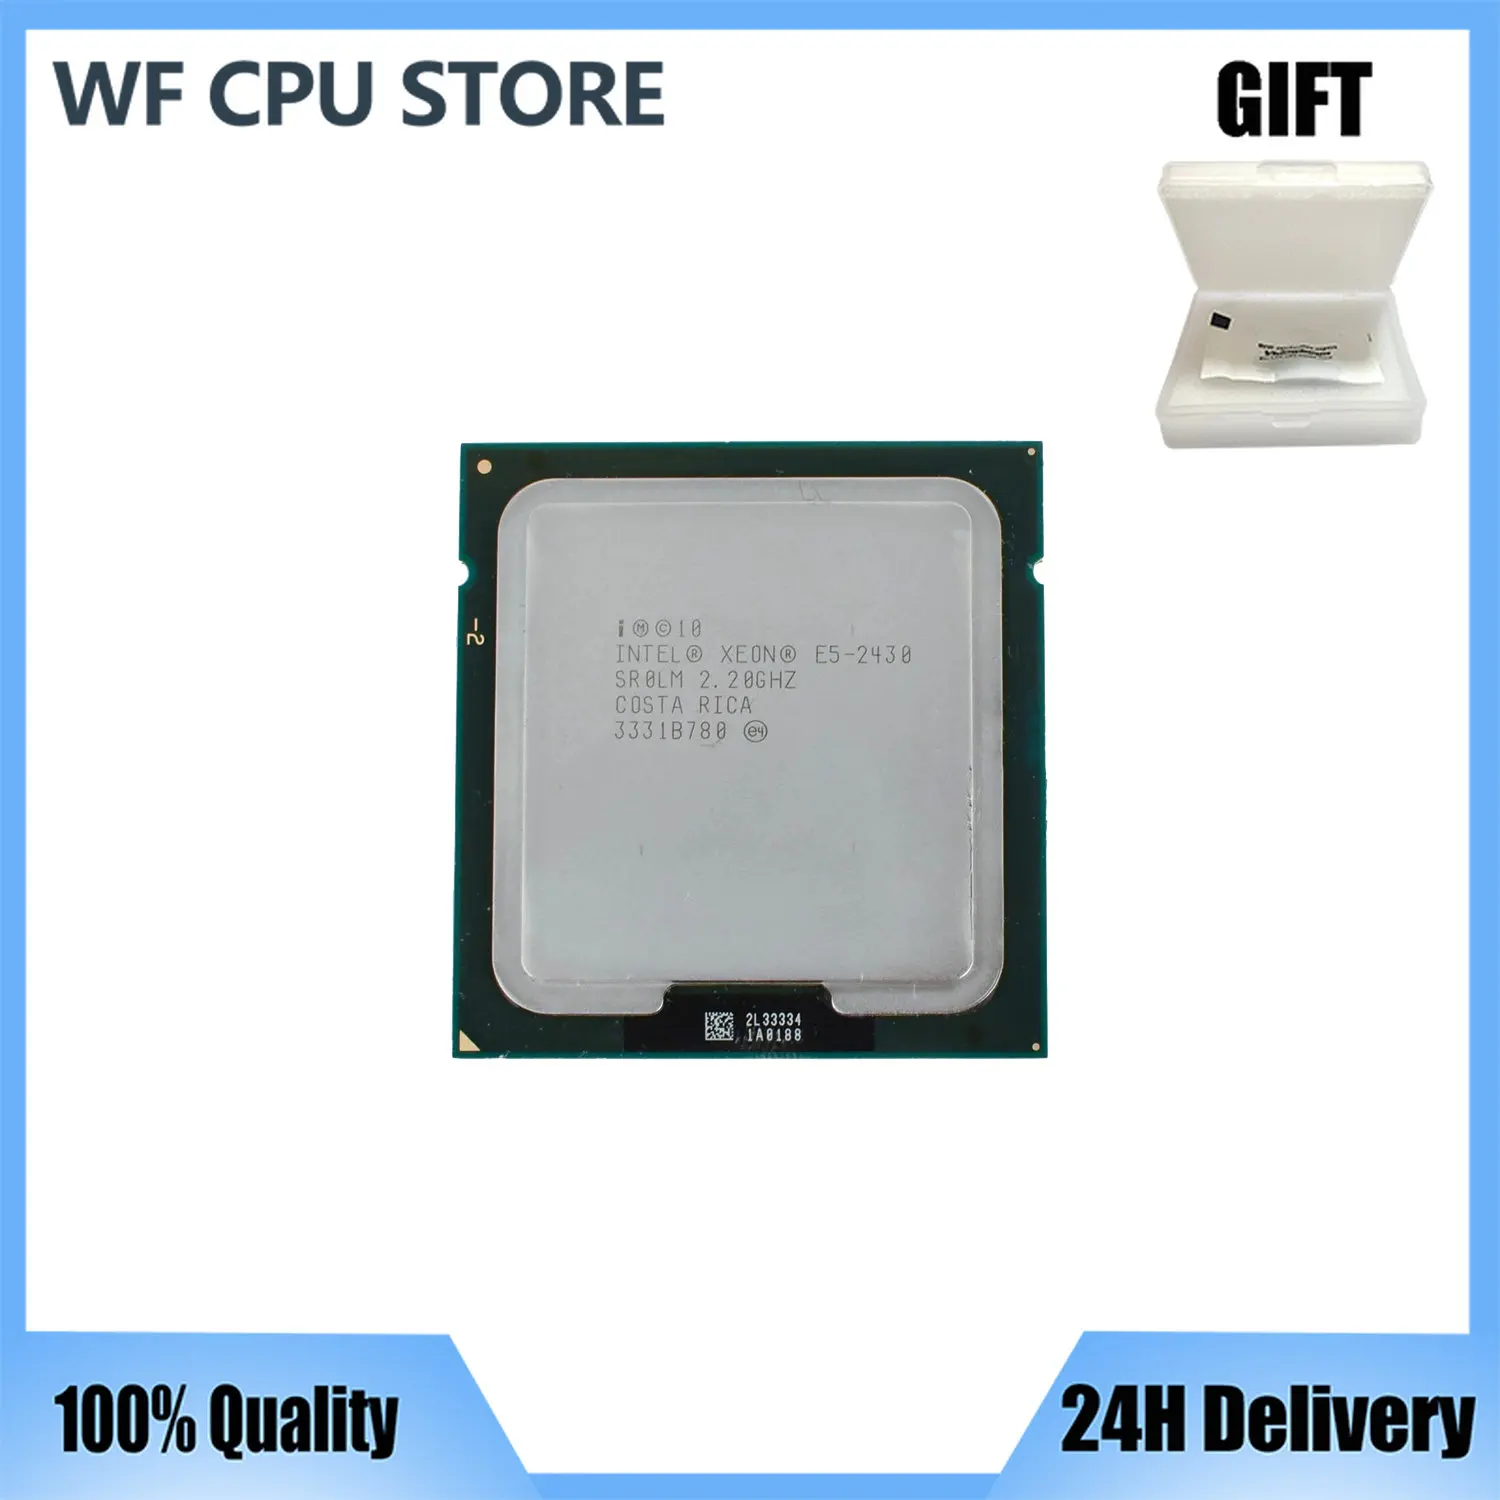 

E5 2430 Original Intel Xeon E5-2430 2.2GHz 6-Core 15MB SmartCache DDR3 1333MHz LGA1356